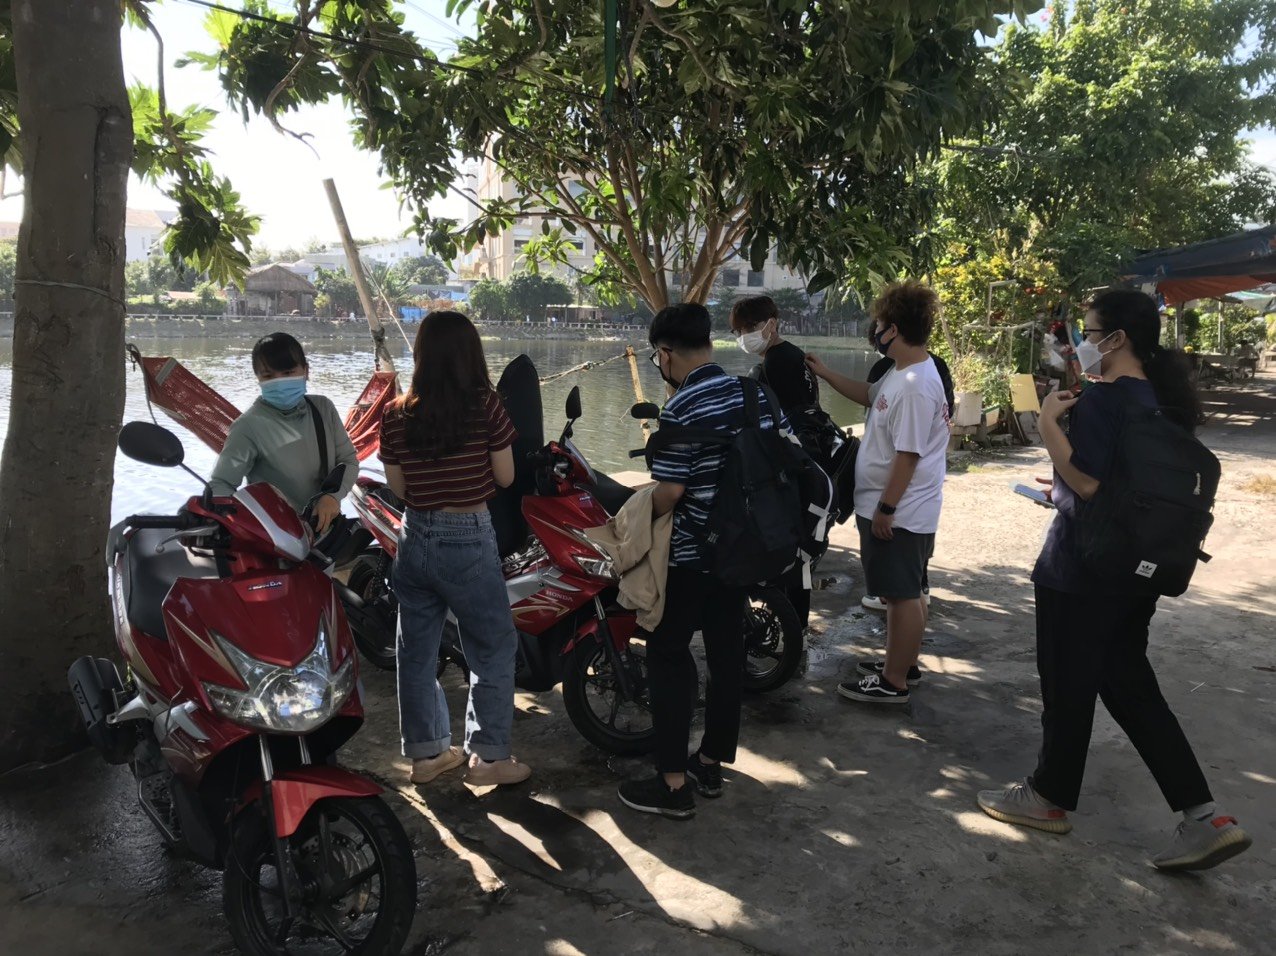 Dịch vụ cho thuê xe máy - Thuê Xe Máy Vũng Tàu - Thanh Hải